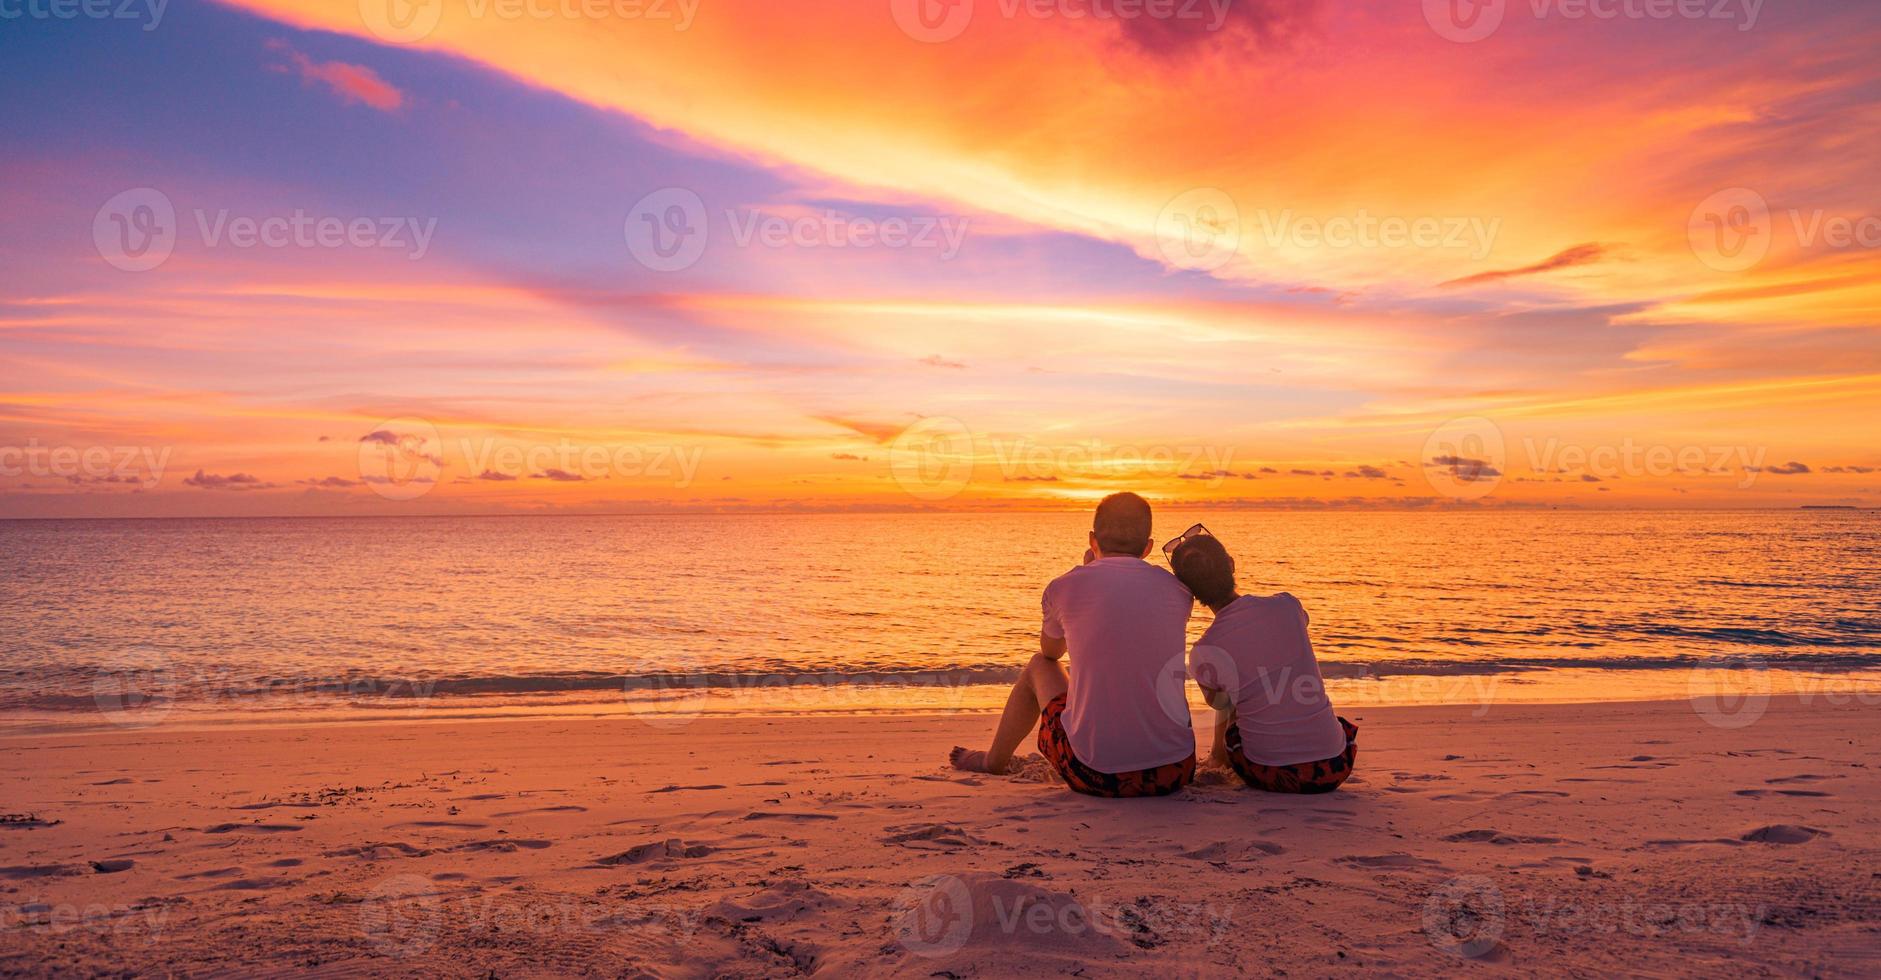 liefde paar aan het kijken zonsondergang samen Aan strand reizen zomer vakantie. mensen silhouet van achter zittend genieten van visie zonsondergang zee tropisch eiland, bestemming vakantie. romantisch vrijheid levensstijl foto